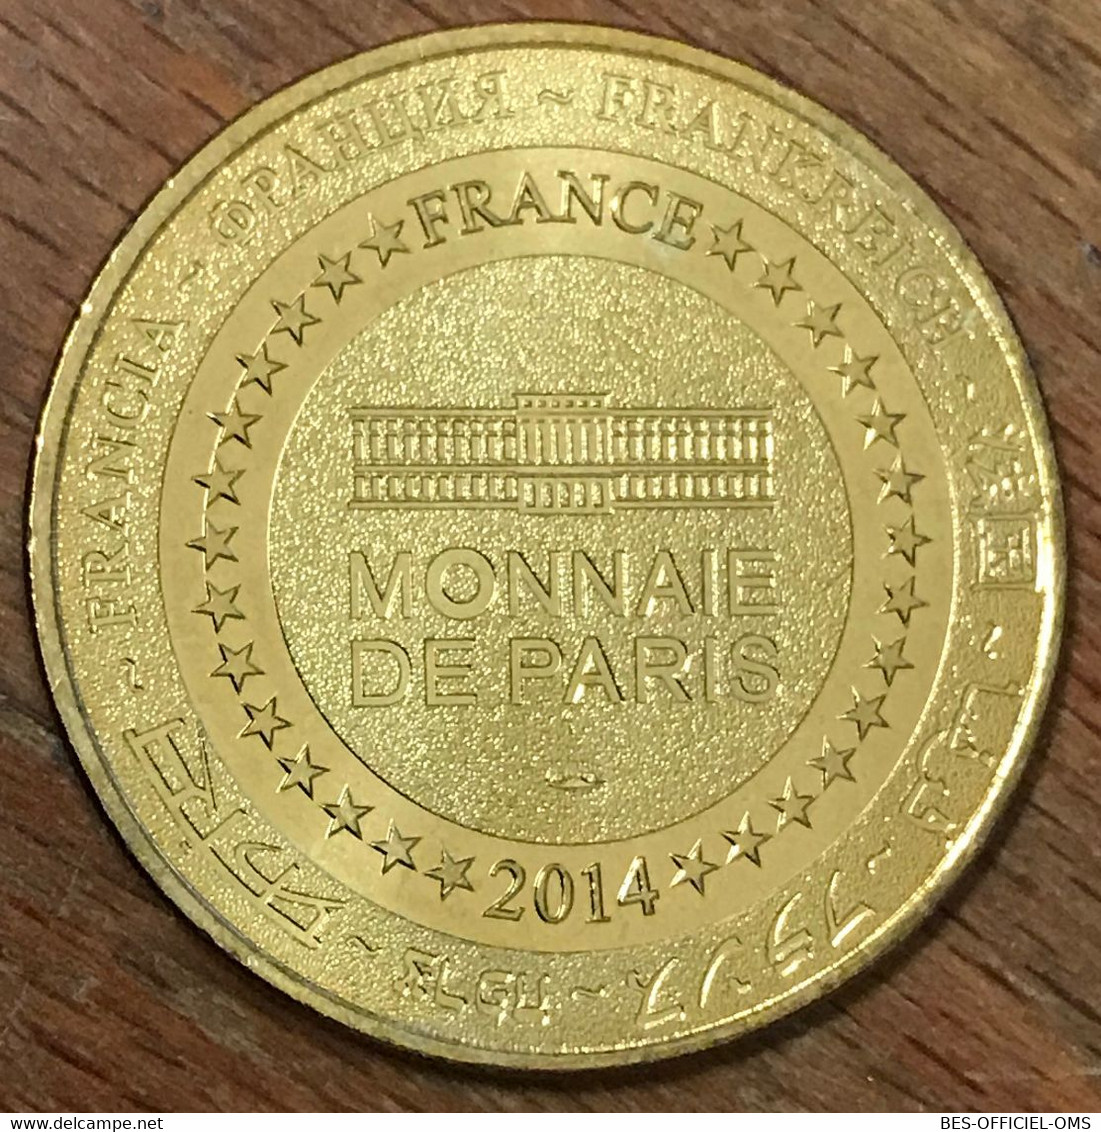 63 CHÂTEAU DE MUROL L'ARCHER MÉDAILLE MONNAIE DE PARIS MDP 2014 JETON TOURISTIQUE MEDALS COINS TOKENS - 2014